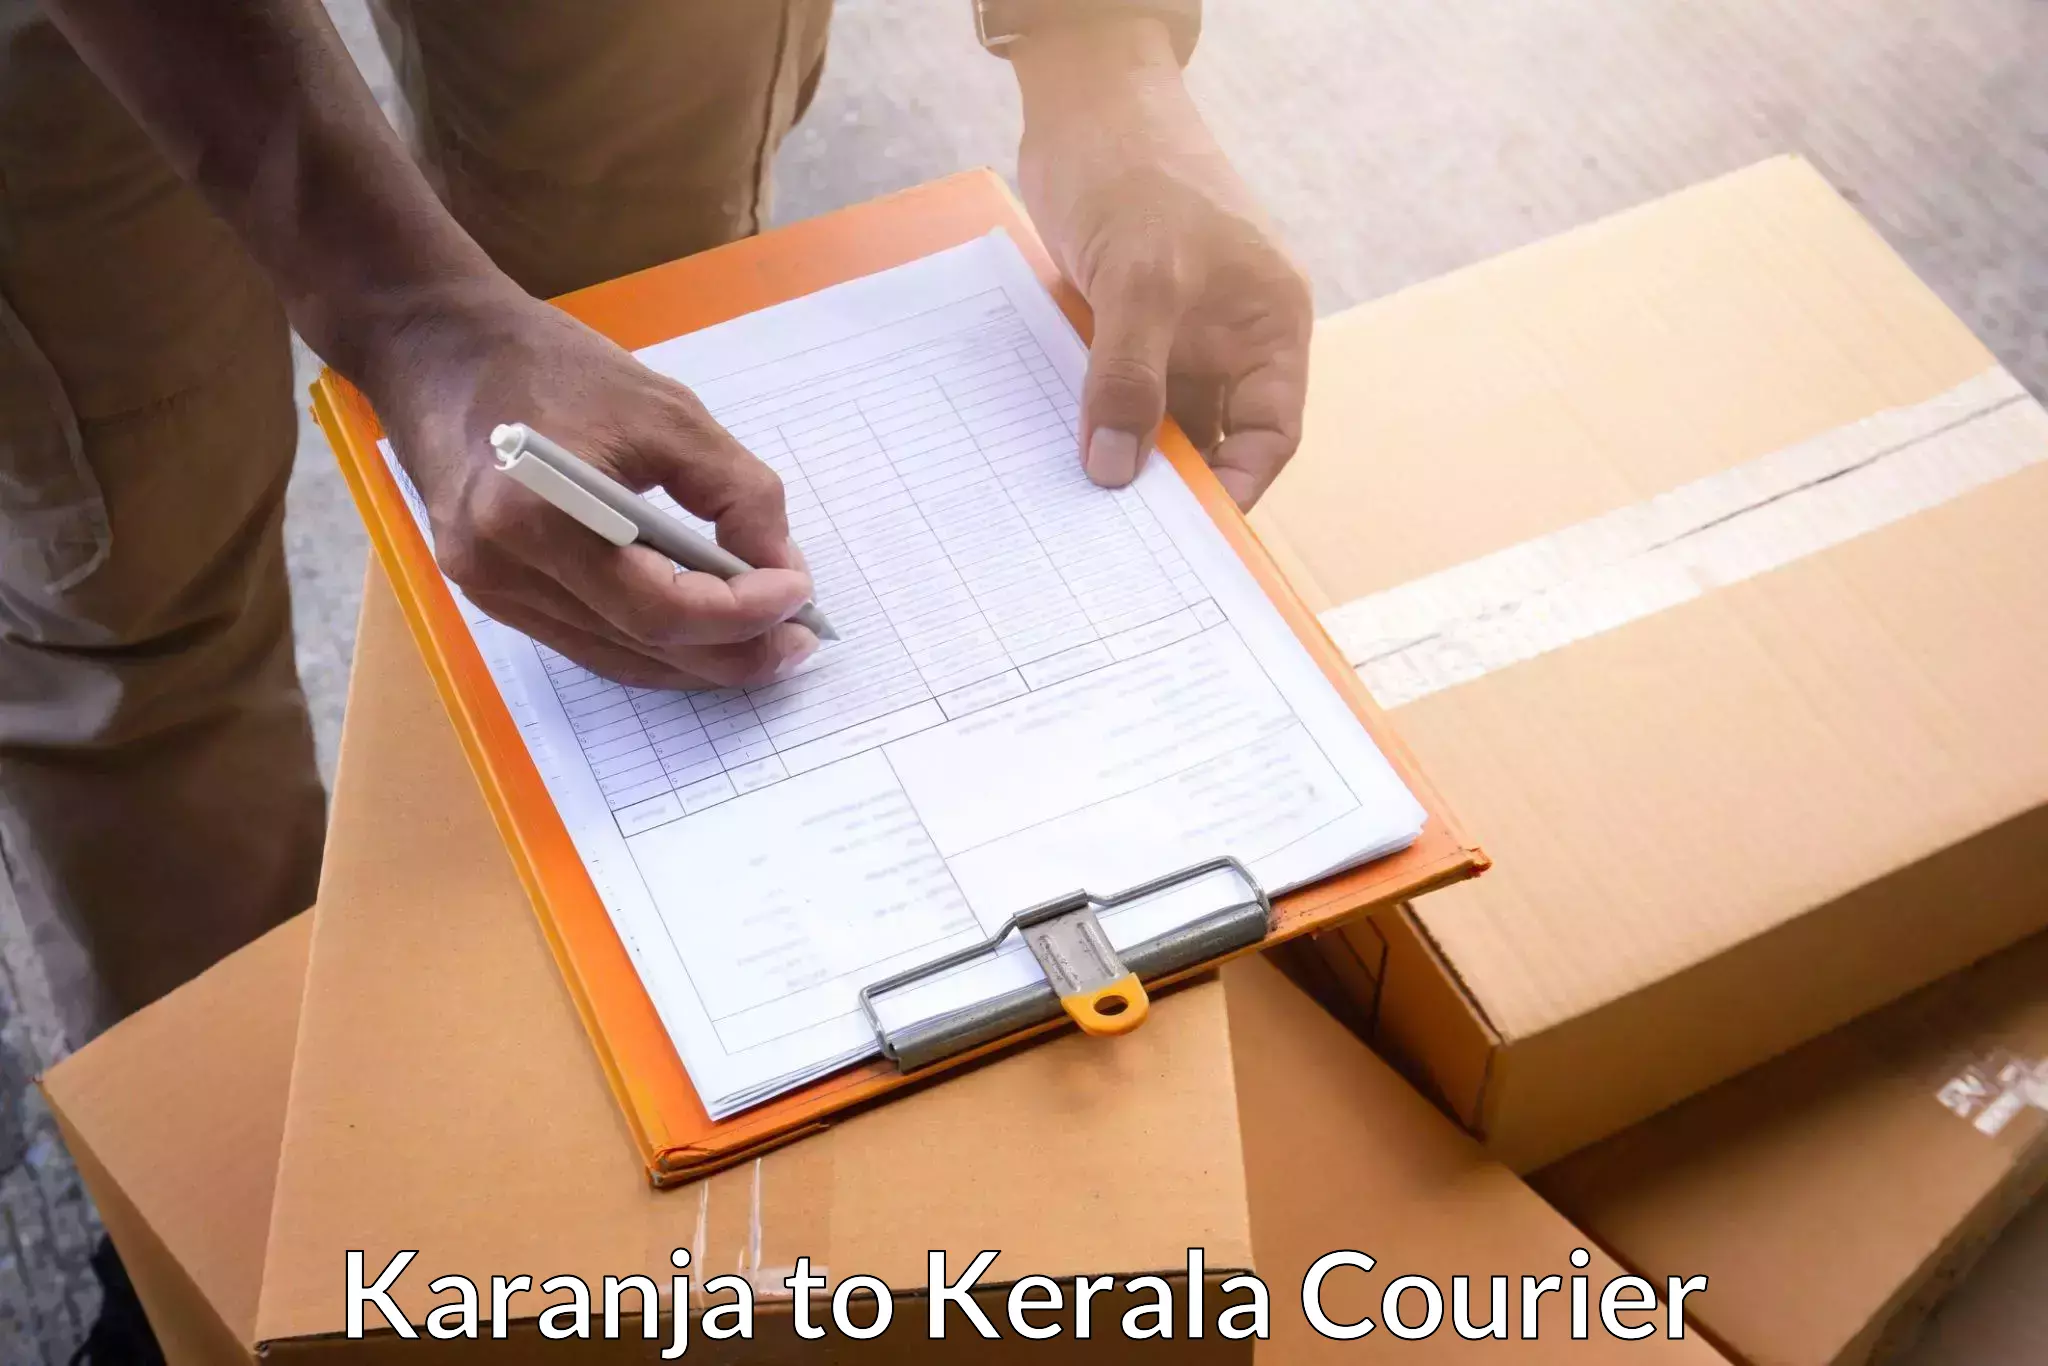 Versatile courier options Karanja to Kerala